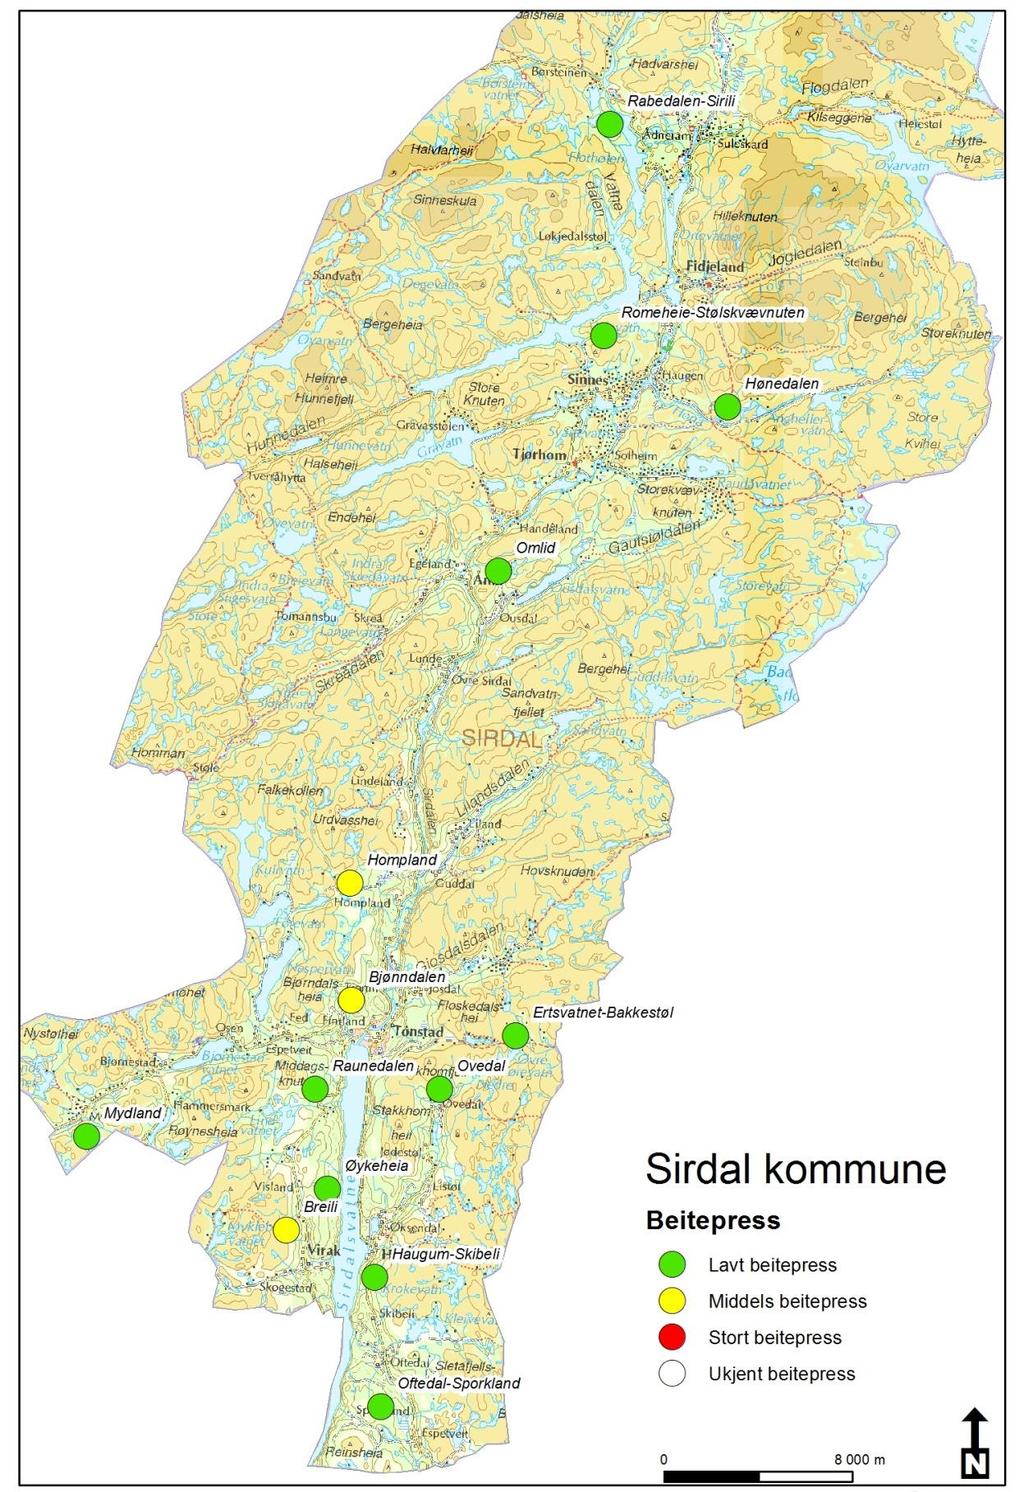 Figur 5. Beitepress i de ulike takseringsområder i Sirdal 2013.